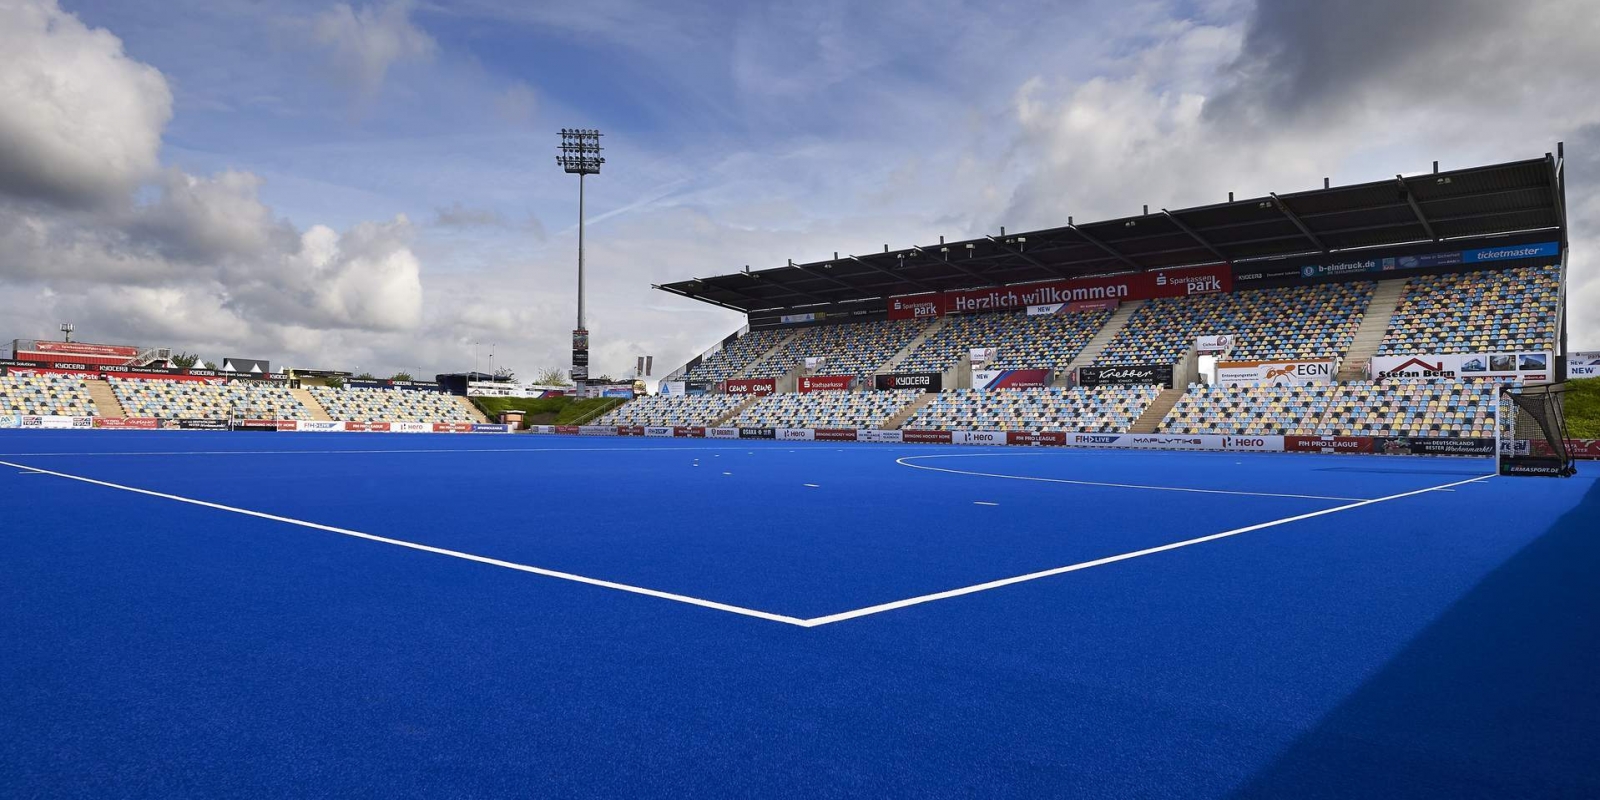 Hockeystadion SparkassenPark  Mönchengladbach aus der Innenansicht. Die Spielfläche ist blau mit weißen Begrenzungslinien, die Tribühnen teilweise überdacht.